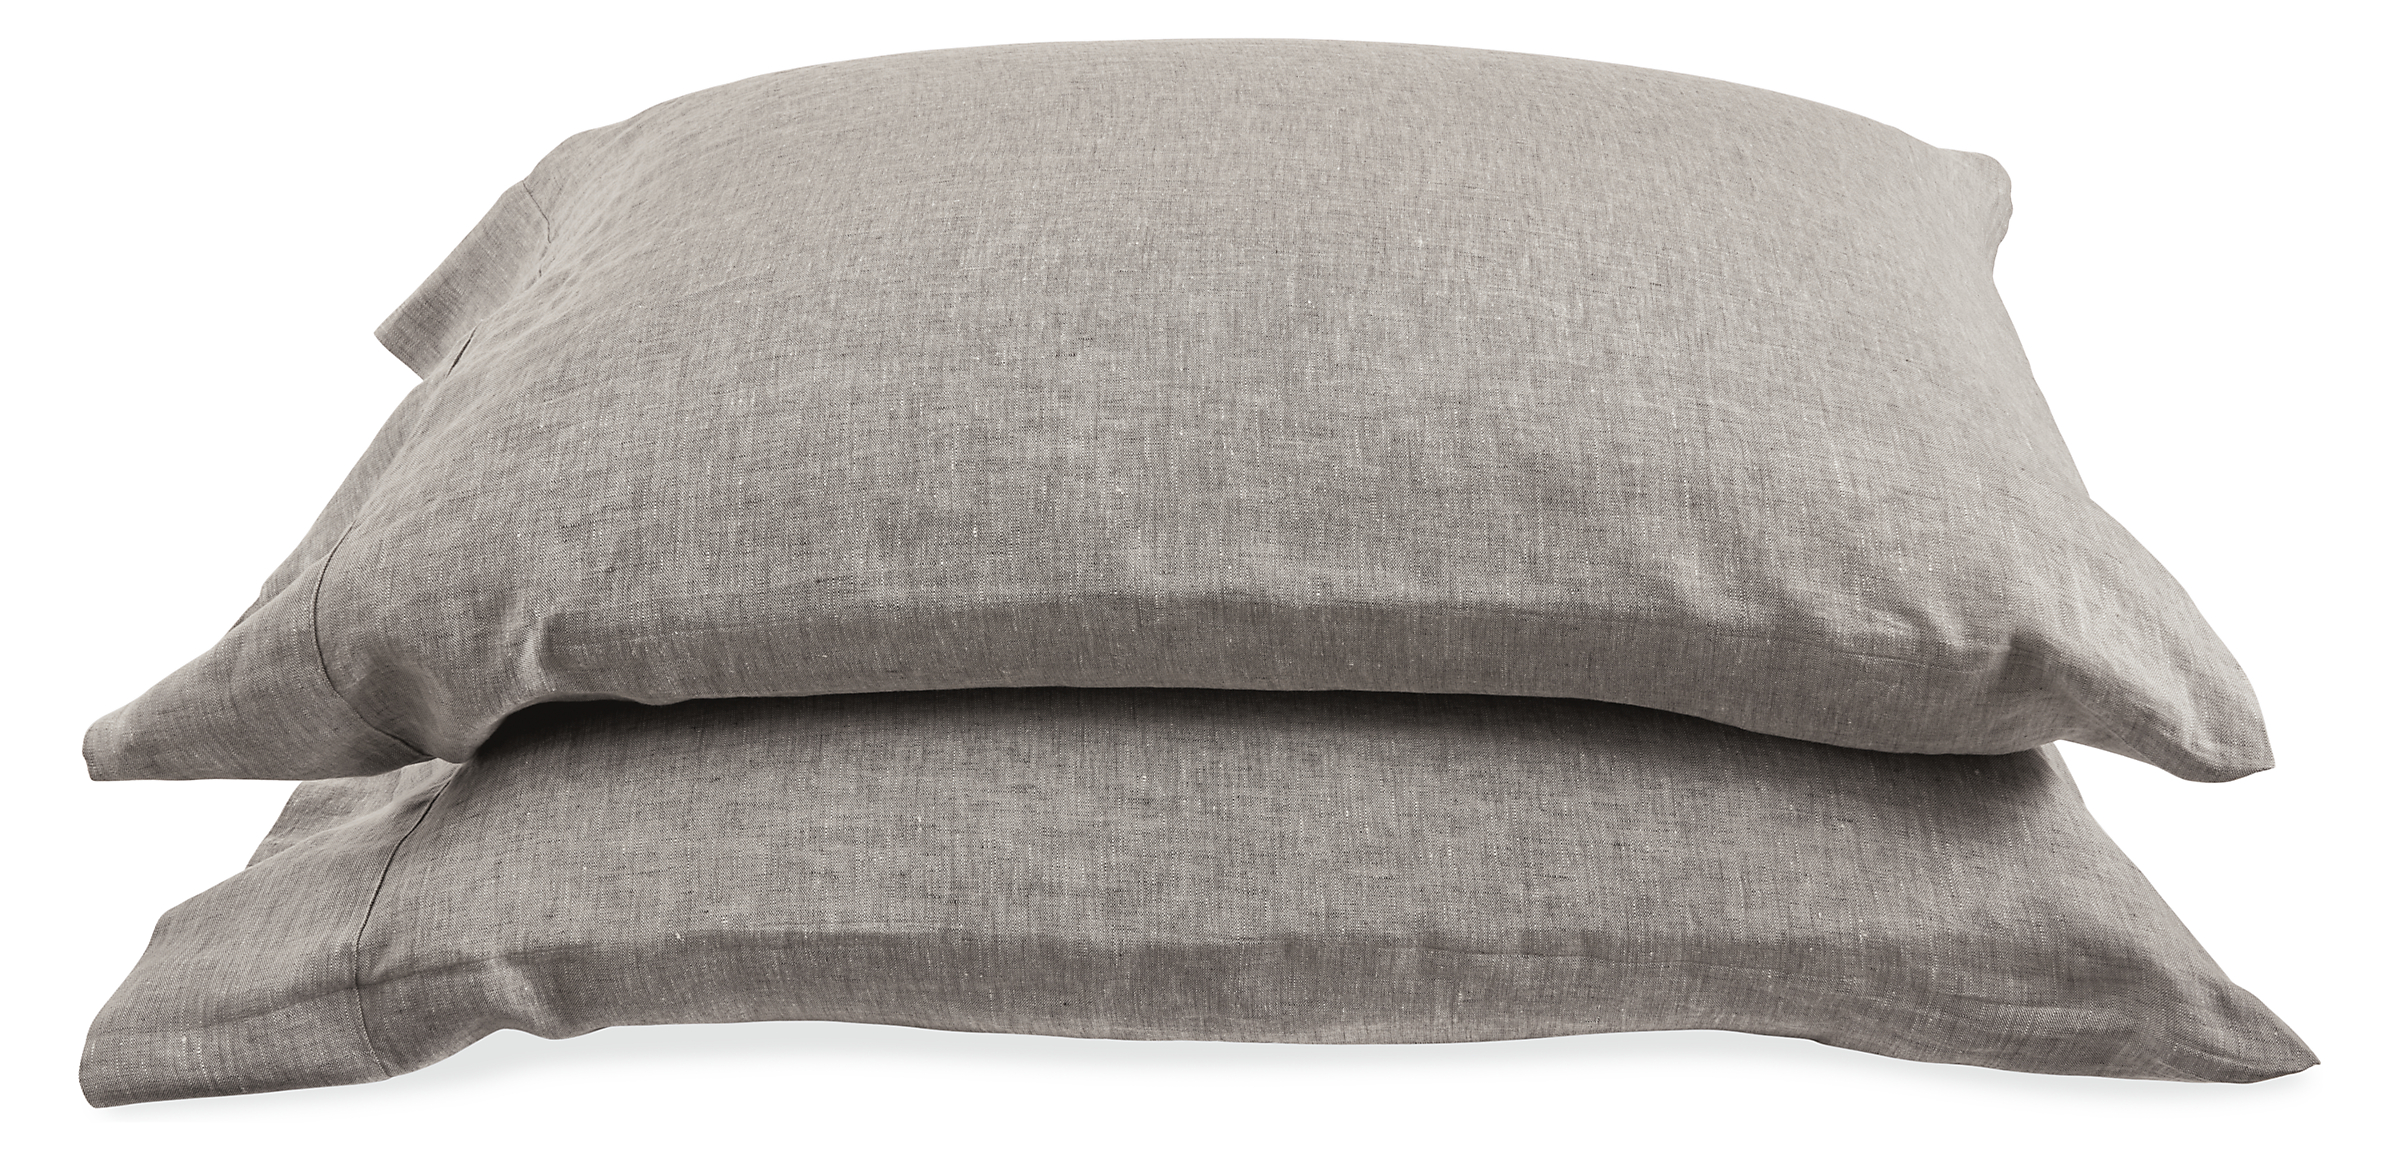 Relaxed Linen Standard Pillowcase Pair